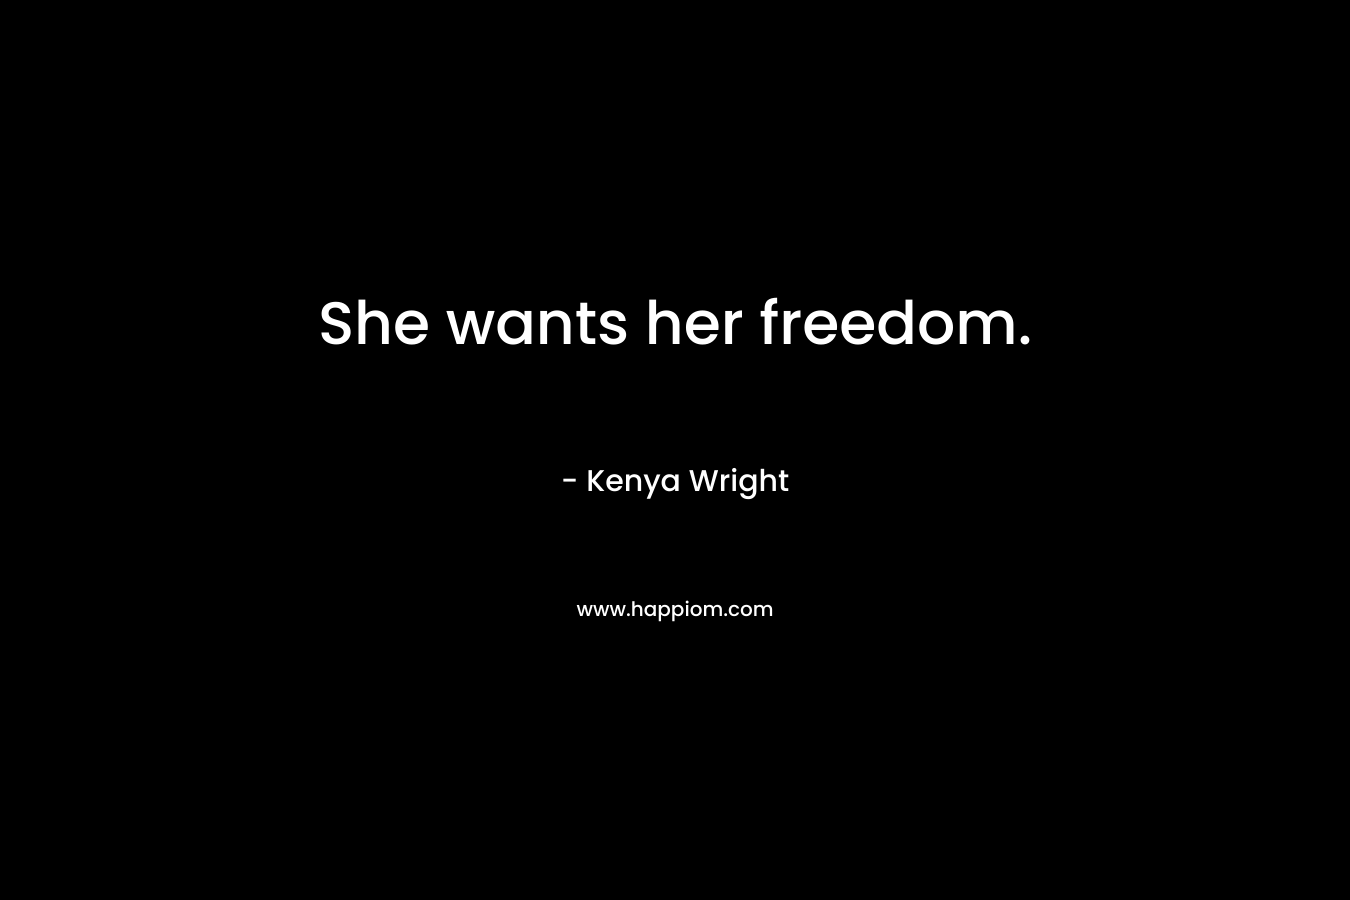 She wants her freedom.